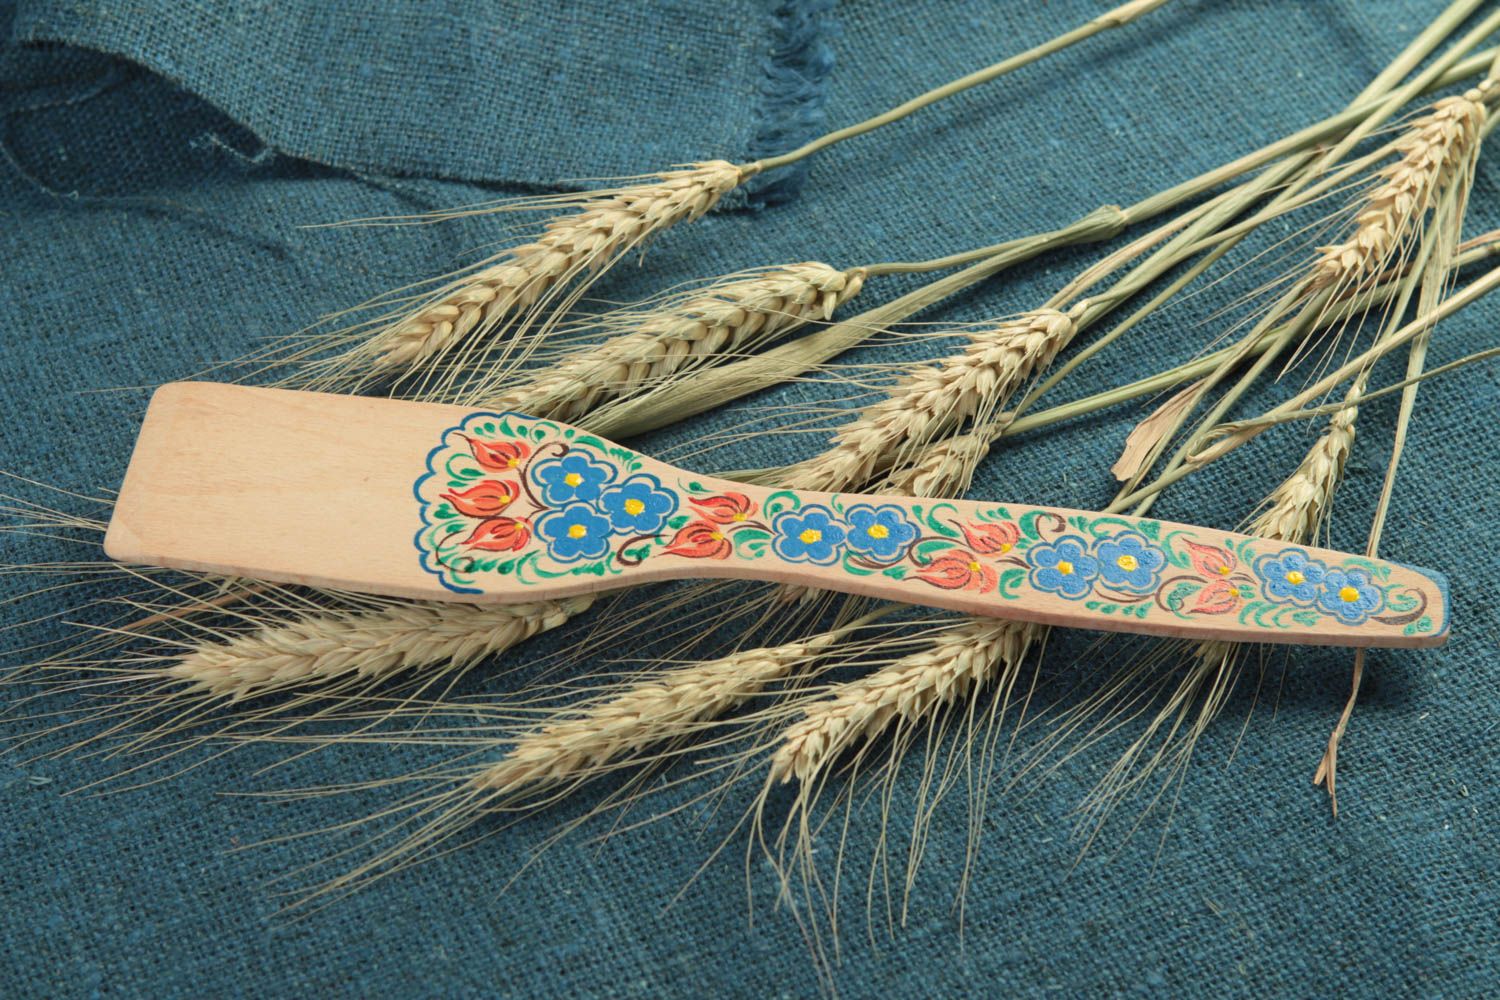 Decorative handmade wooden spatula kitchen accessories designs gift ideas photo 1